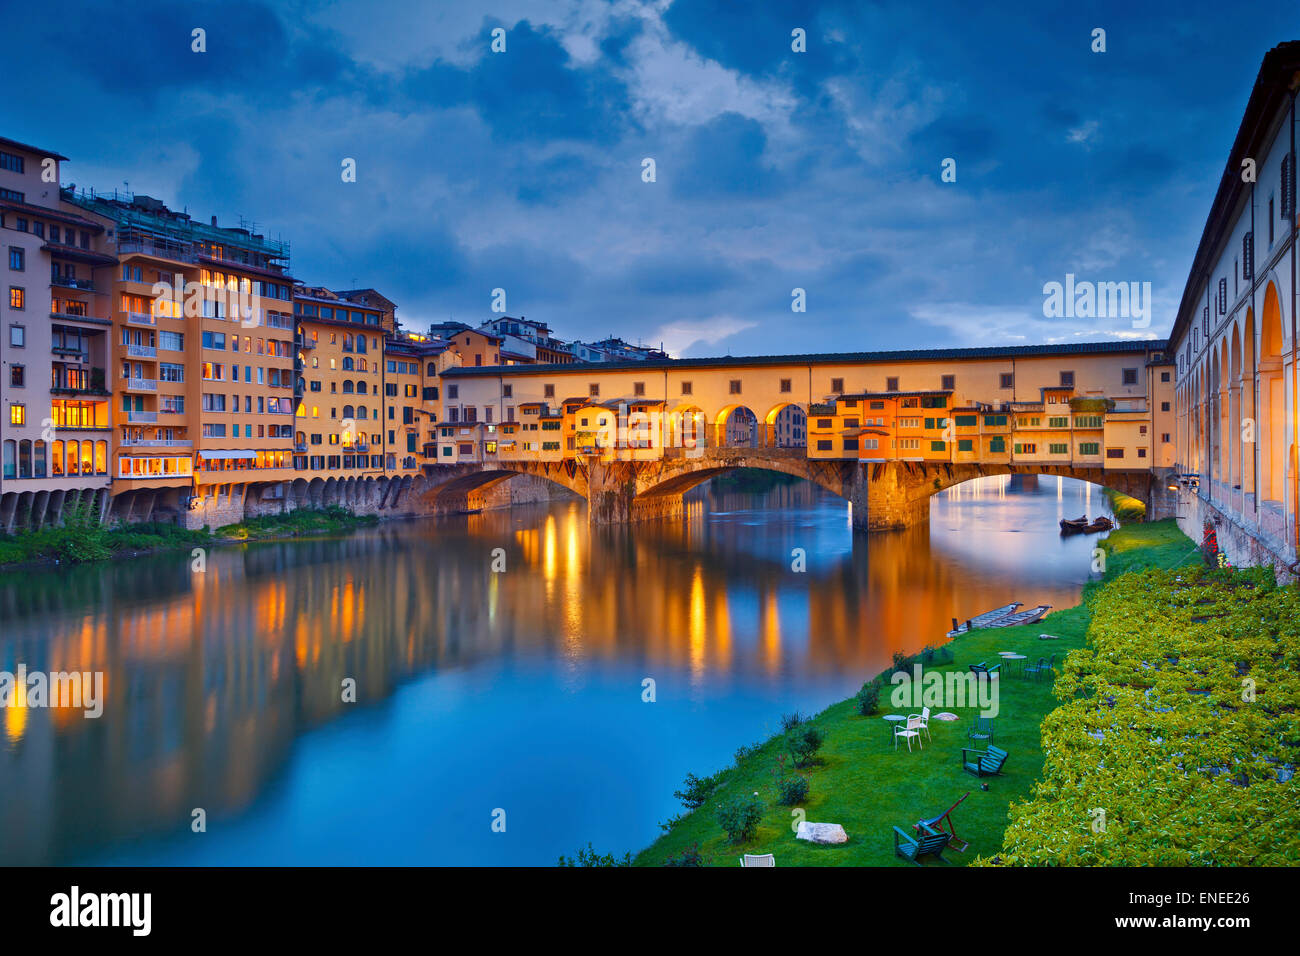 Florencia. Imagen de Ponte Vecchio en Florencia, Italia, al anochecer. Foto de stock